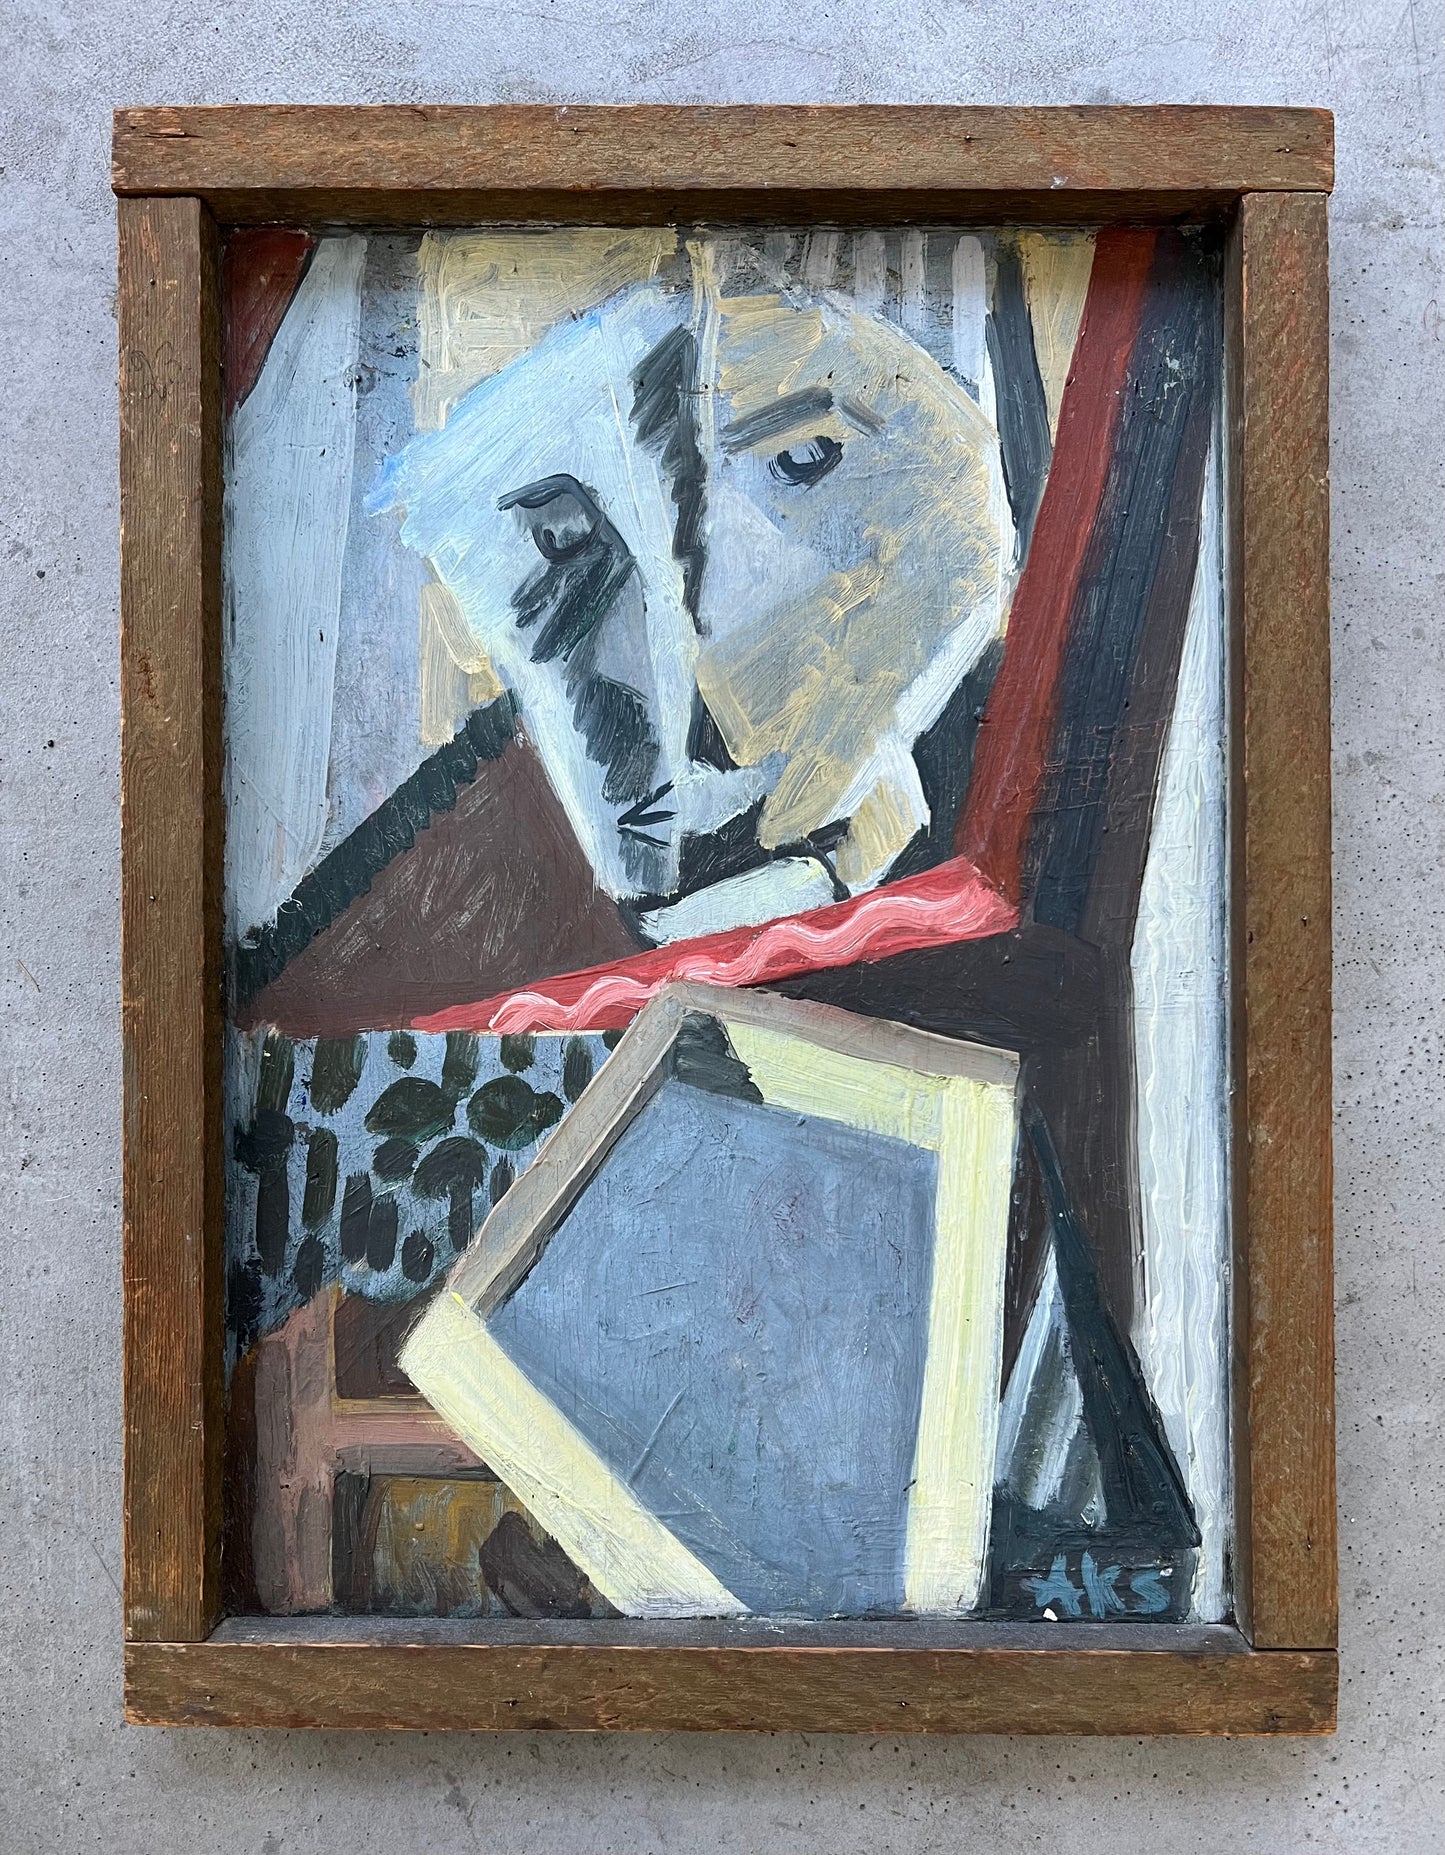 Anna Klindt Sørensen. “Efter Picasso, composition”, 1930’s